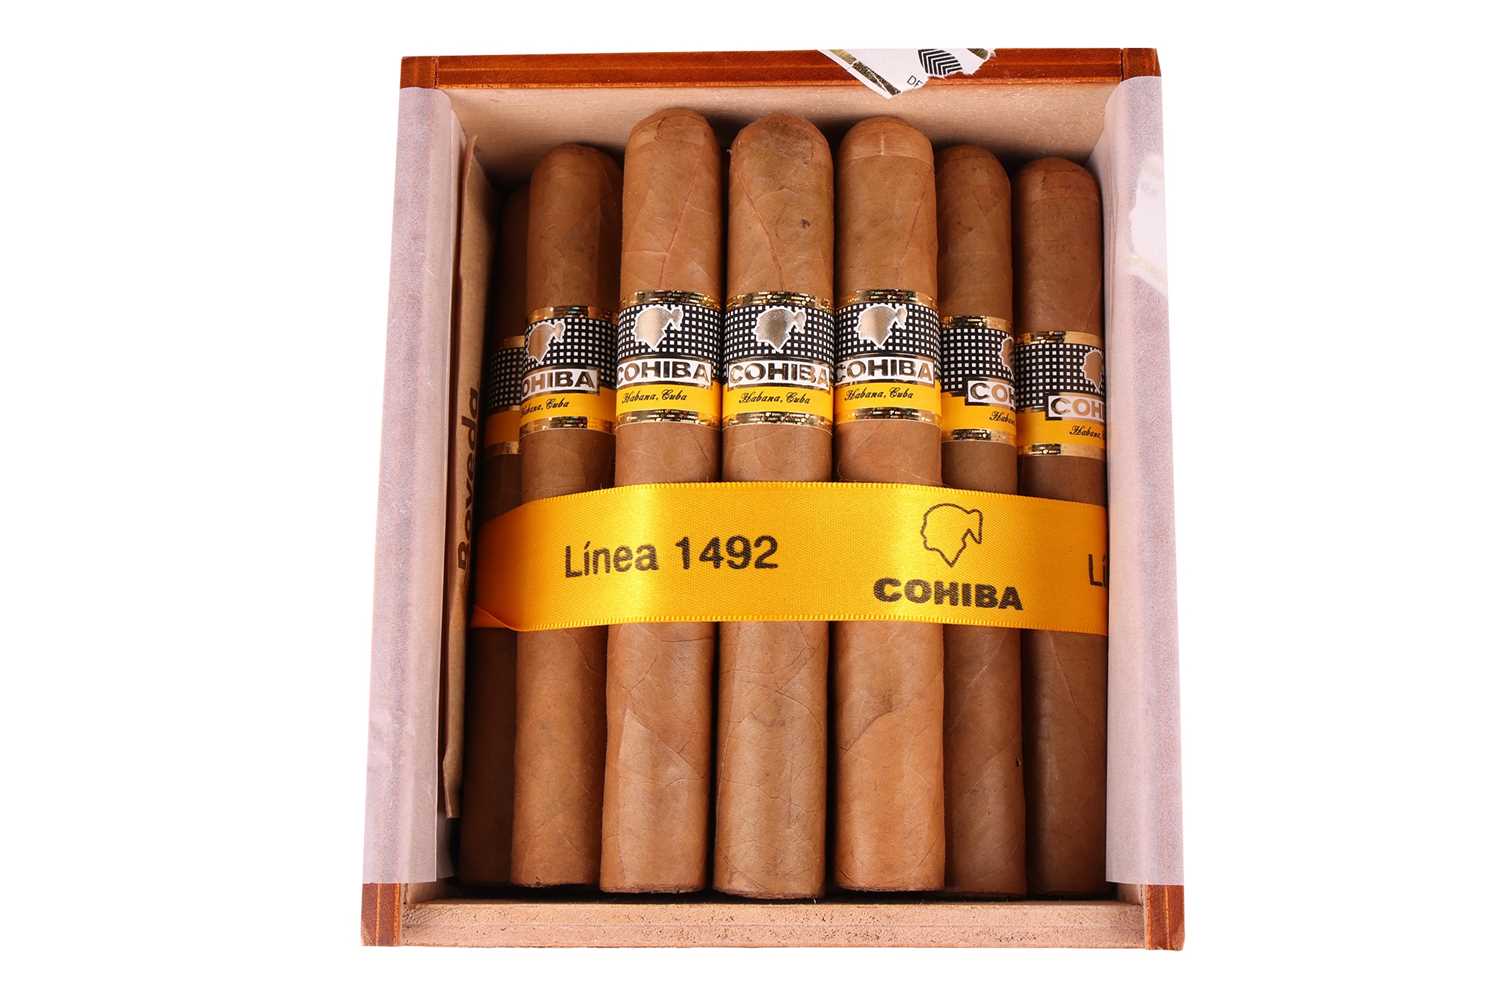 Lot 109 - One Box of Cohiba Siglo V1, (25 cigars), EOS...